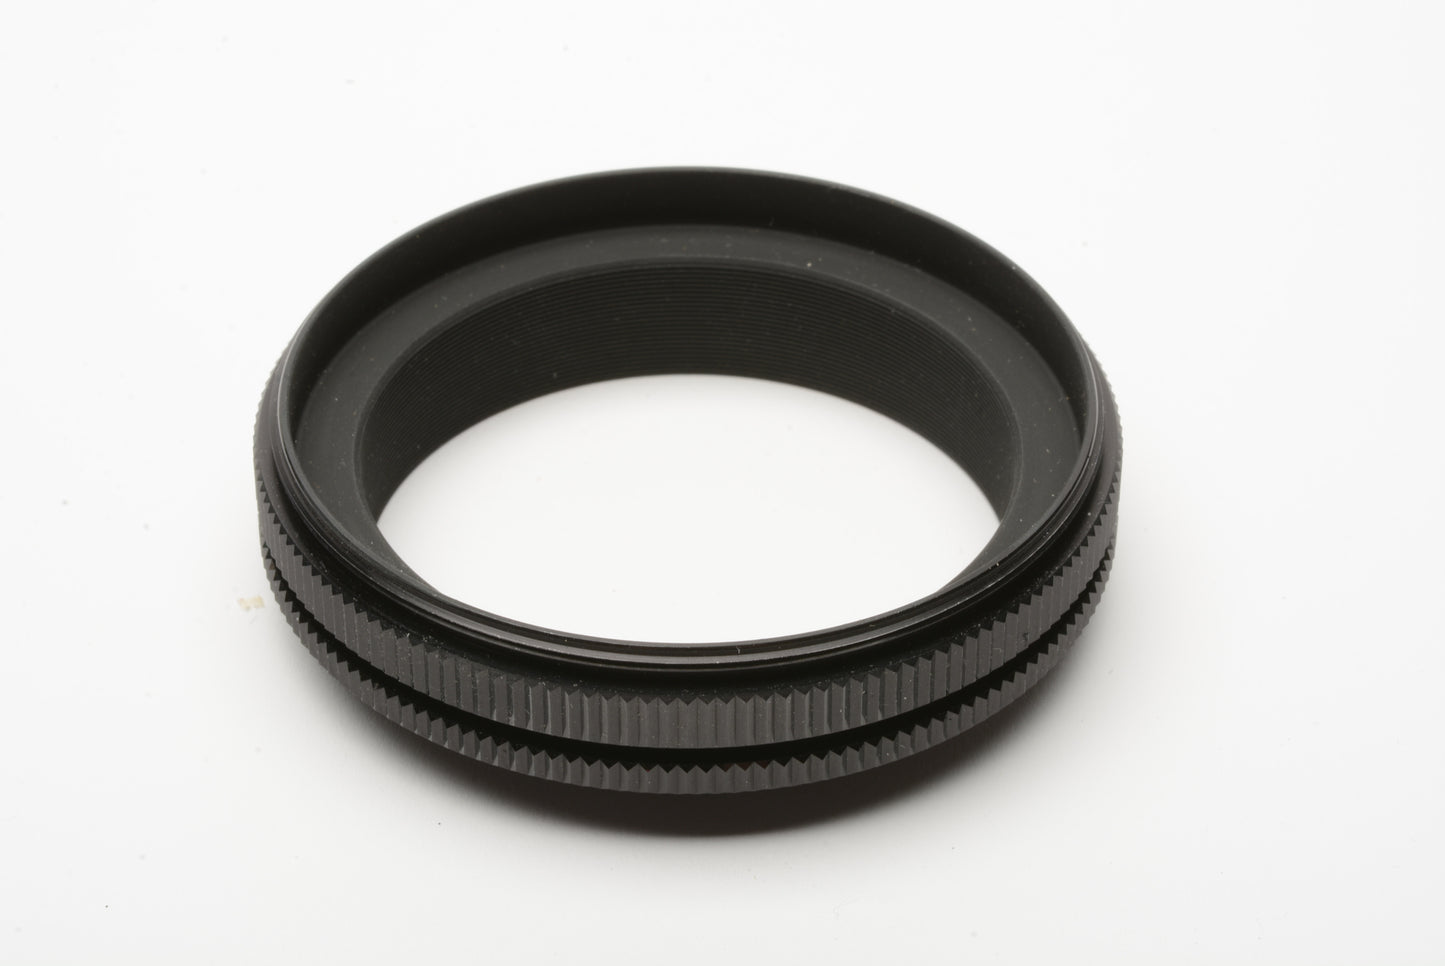 Zenza Bronica Lens Reversing Ring for S2 S2A C EC, Boxed